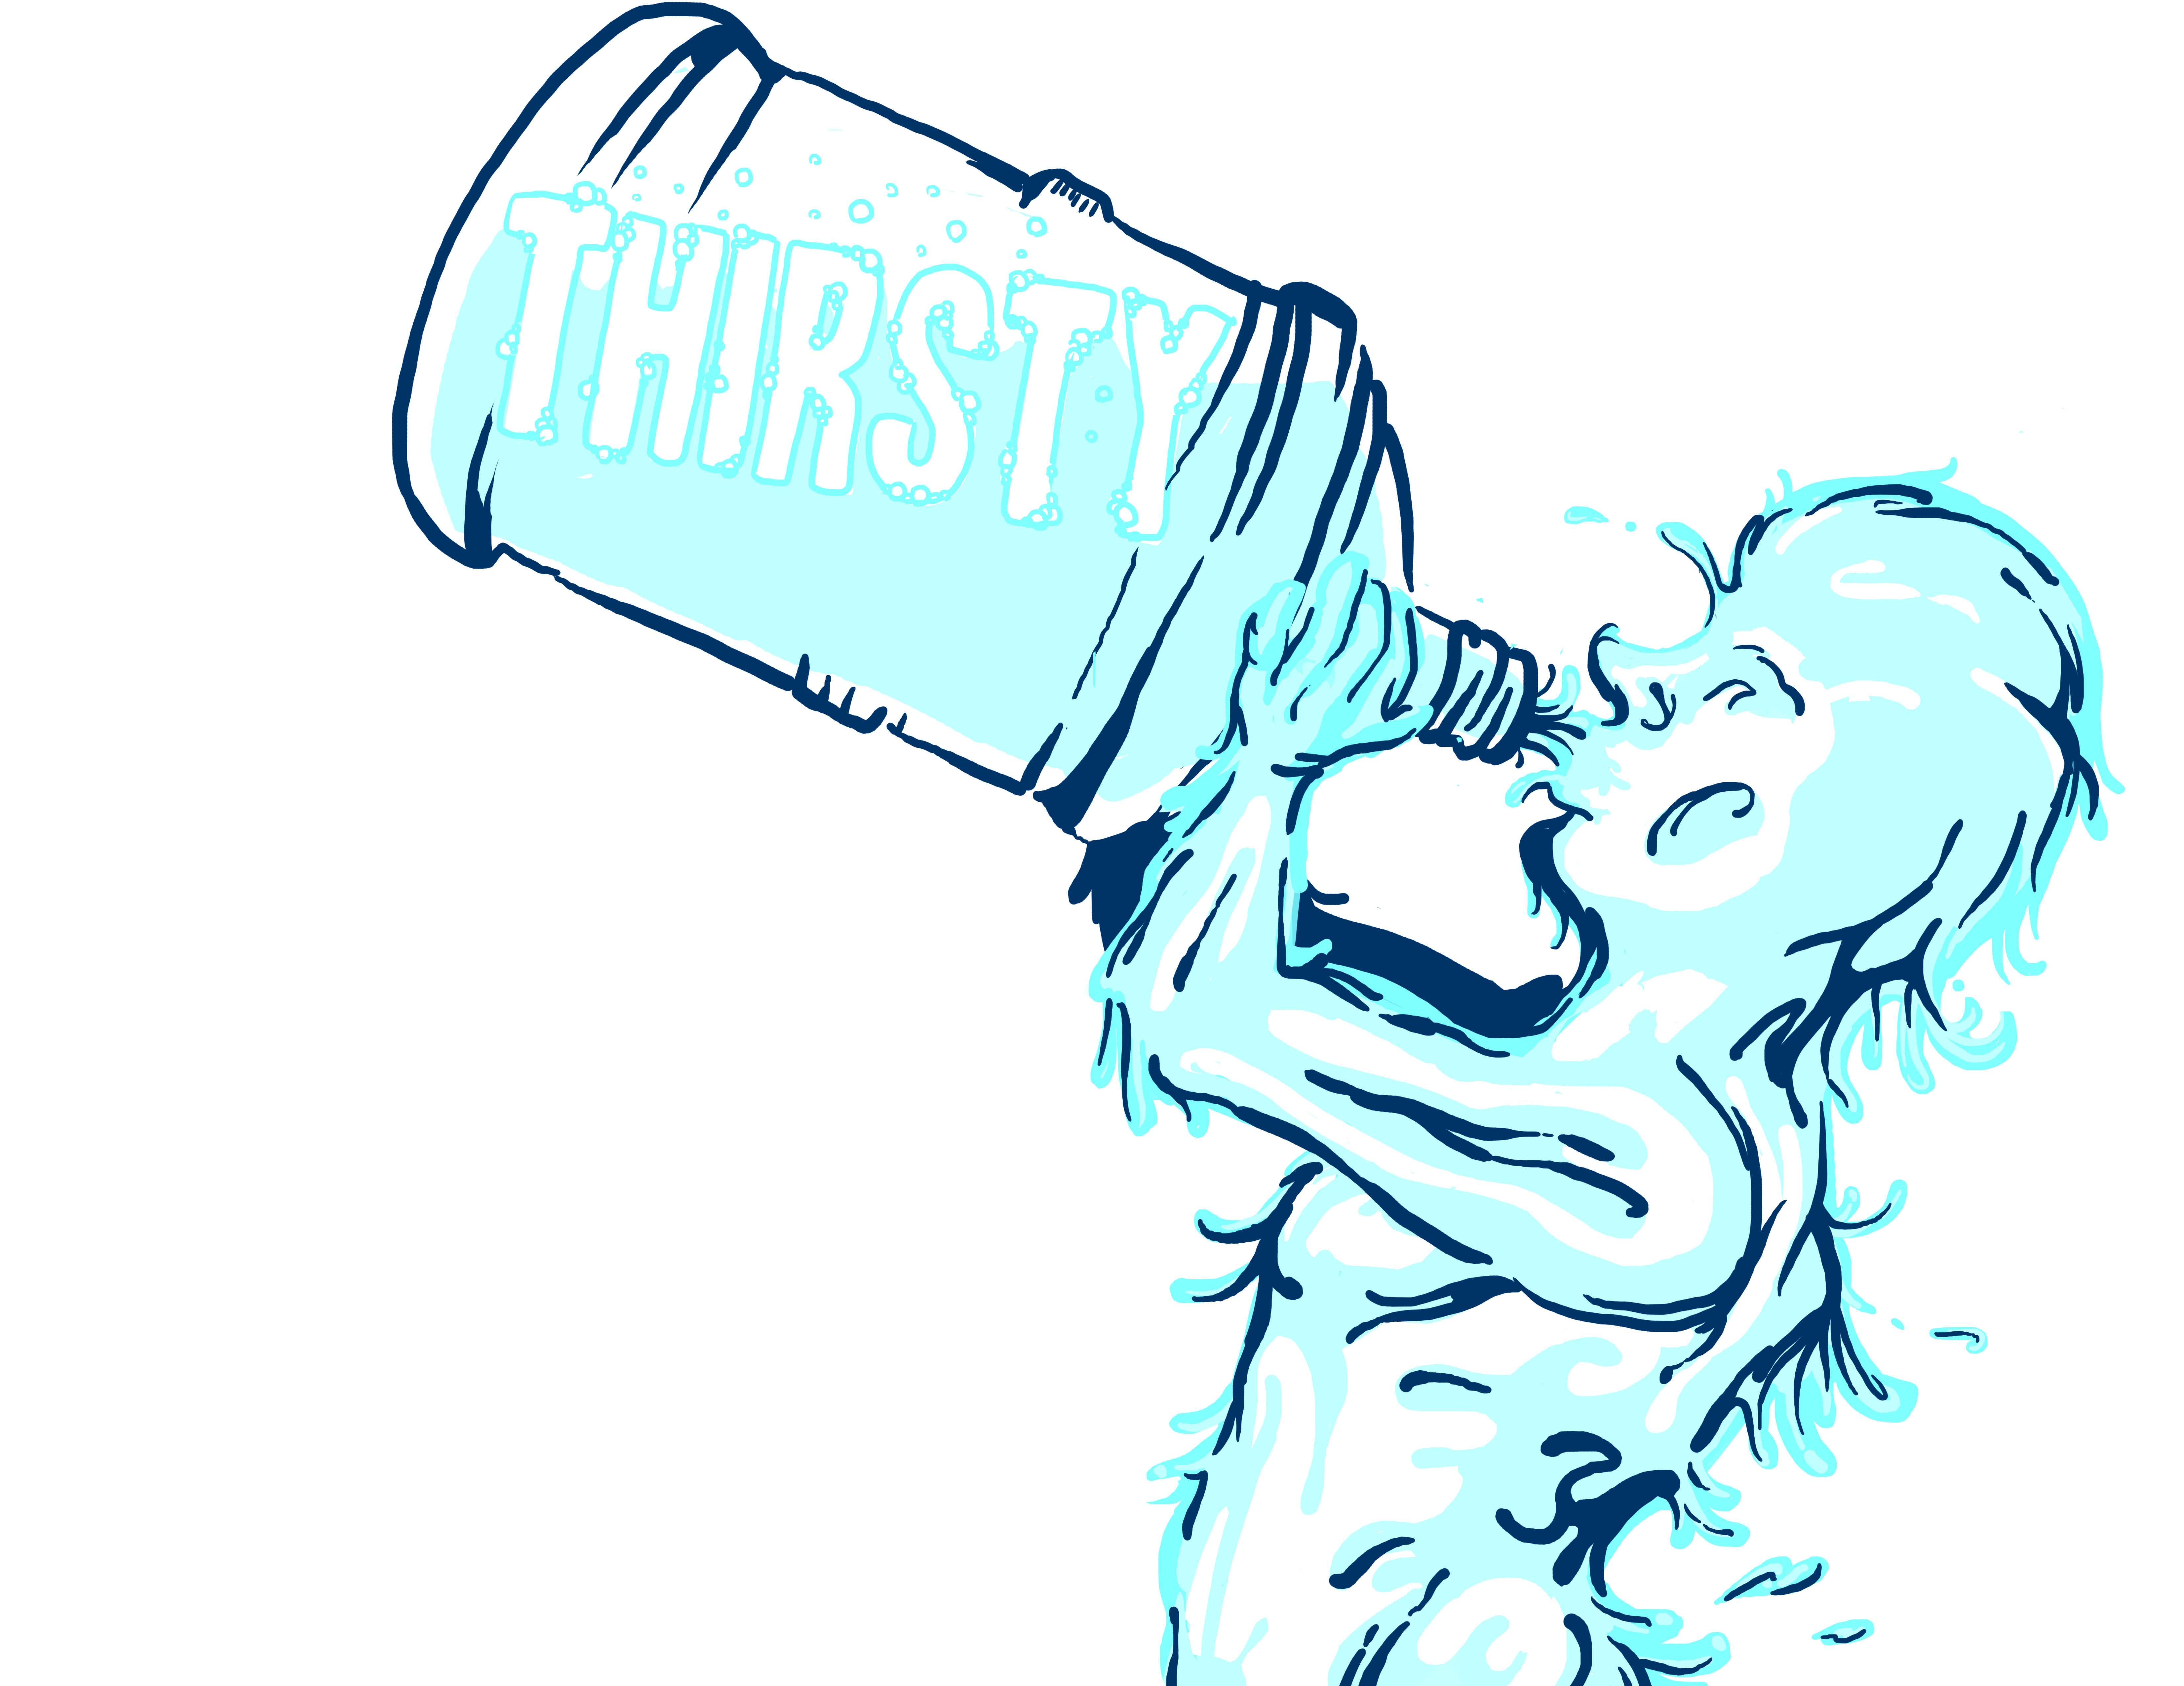 Thirst #10